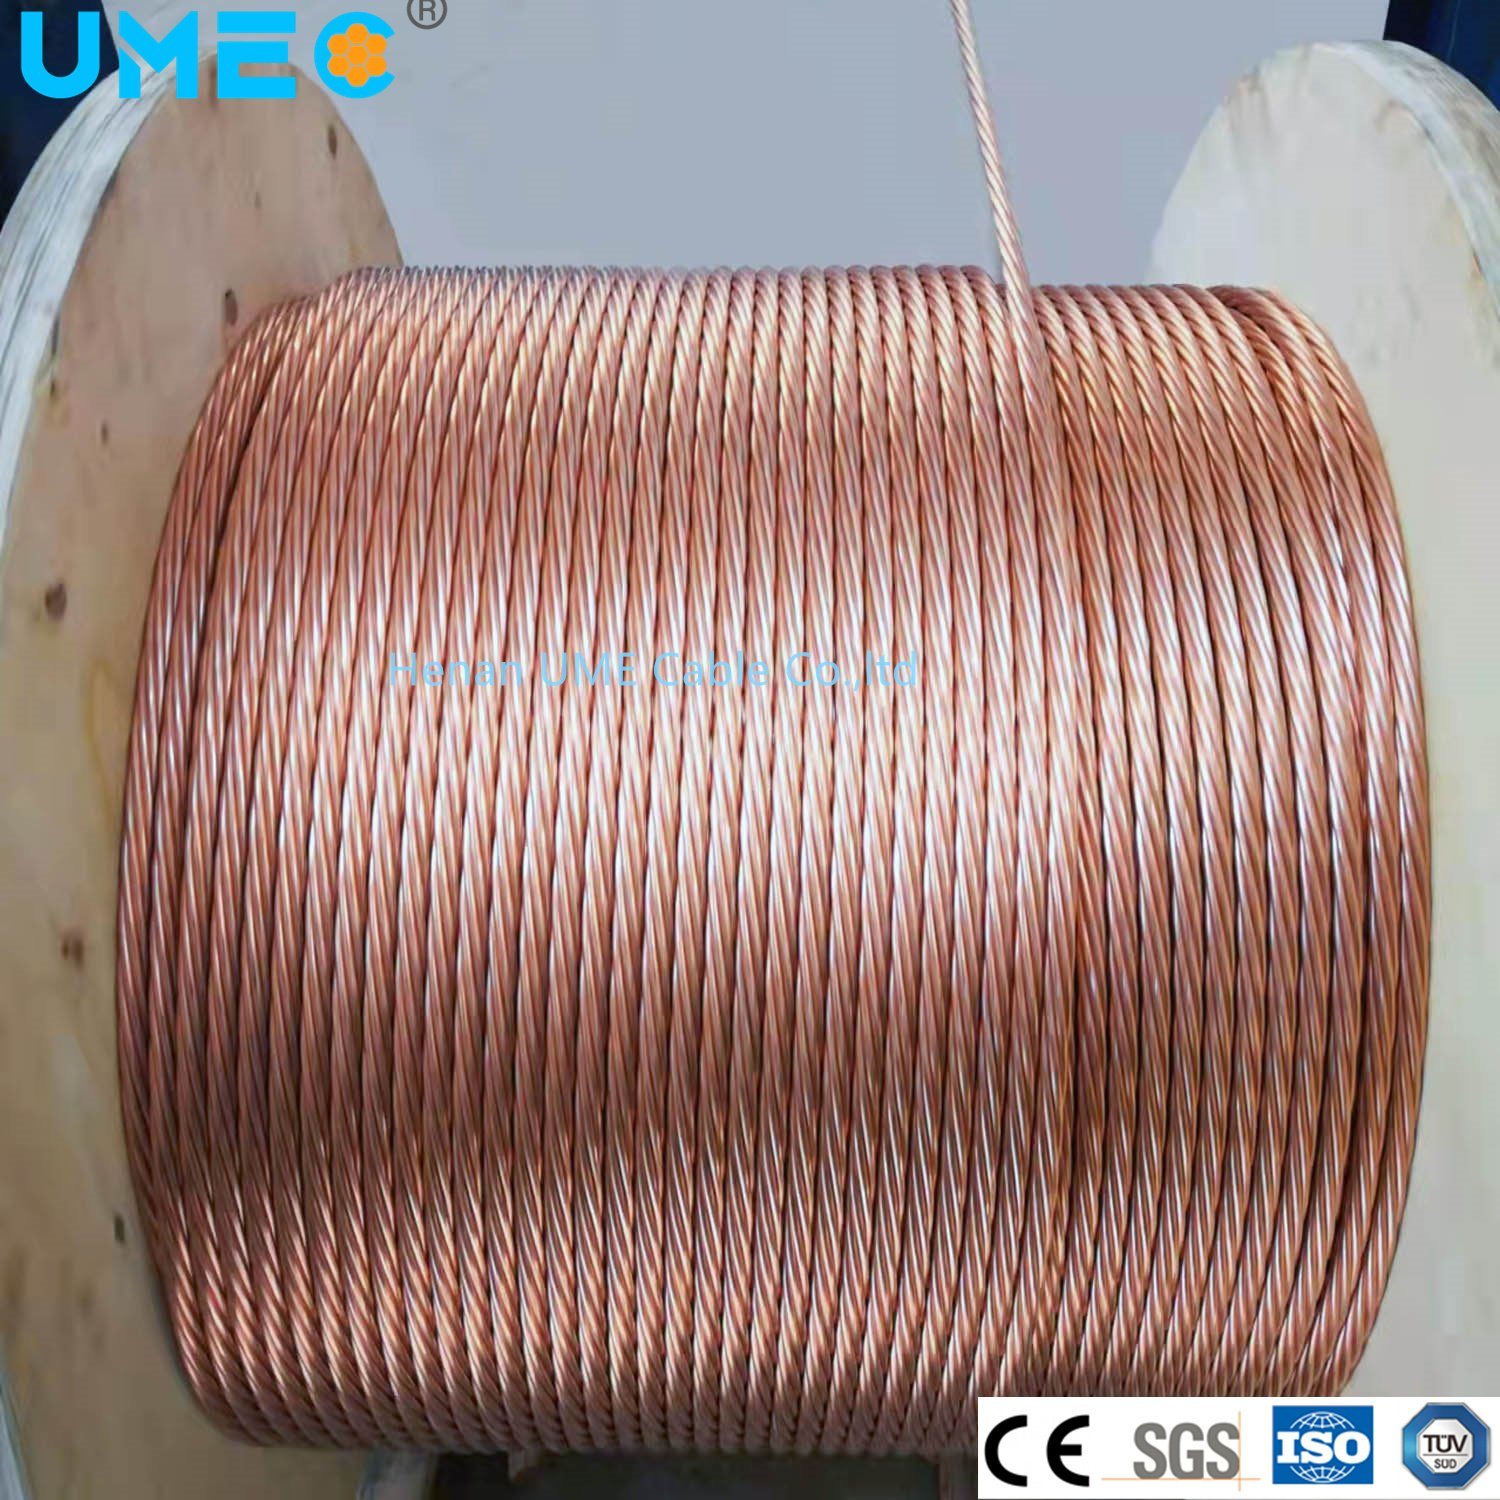 
                Kupferbeschichteter Stahldraht 30% Leitfähigkeit Kupferschweißen CCS Conductor Electrical Kabel Kabel CCS
            